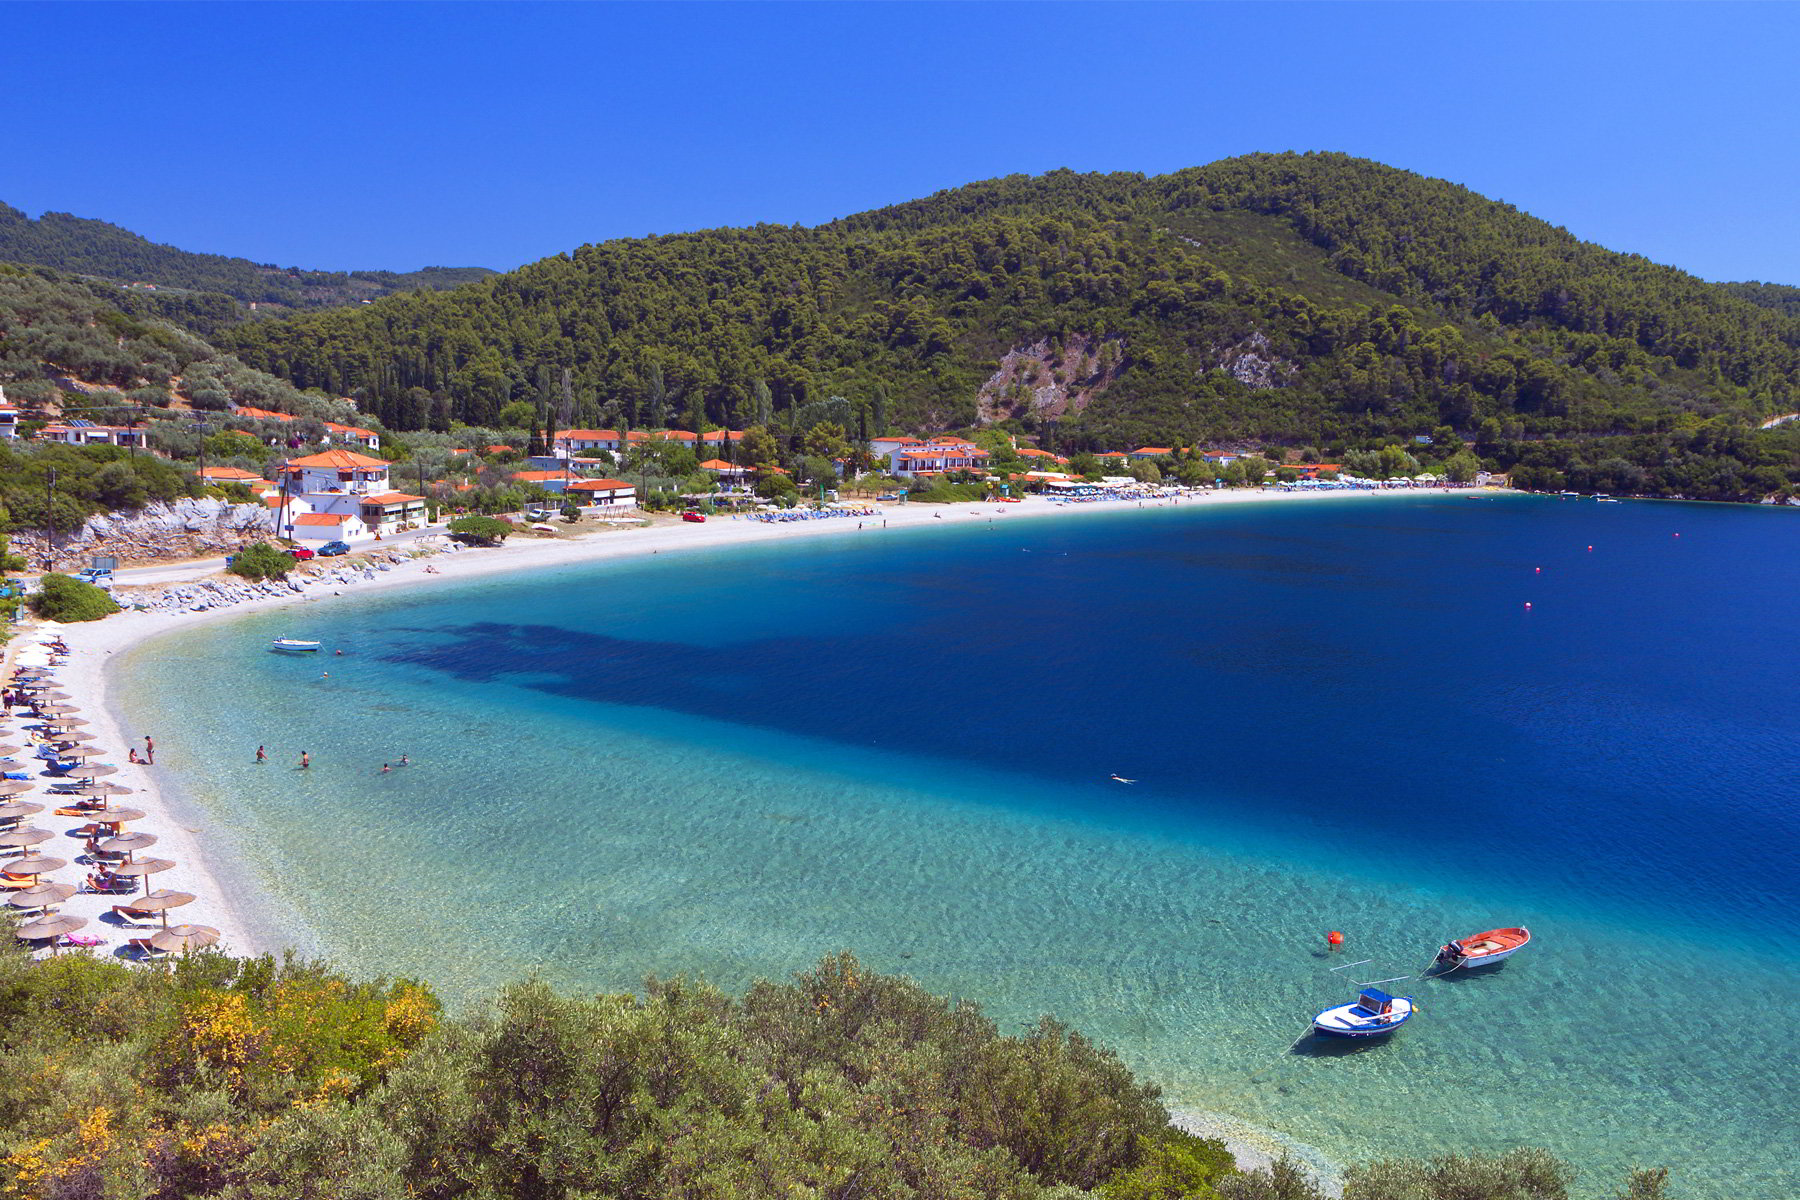 Super Reducere Early Booking Sejur Individual Grecia - Skopelos Hotel Dolphin 2* Mai 5 nopti de la doar 159 Euro/persoana!